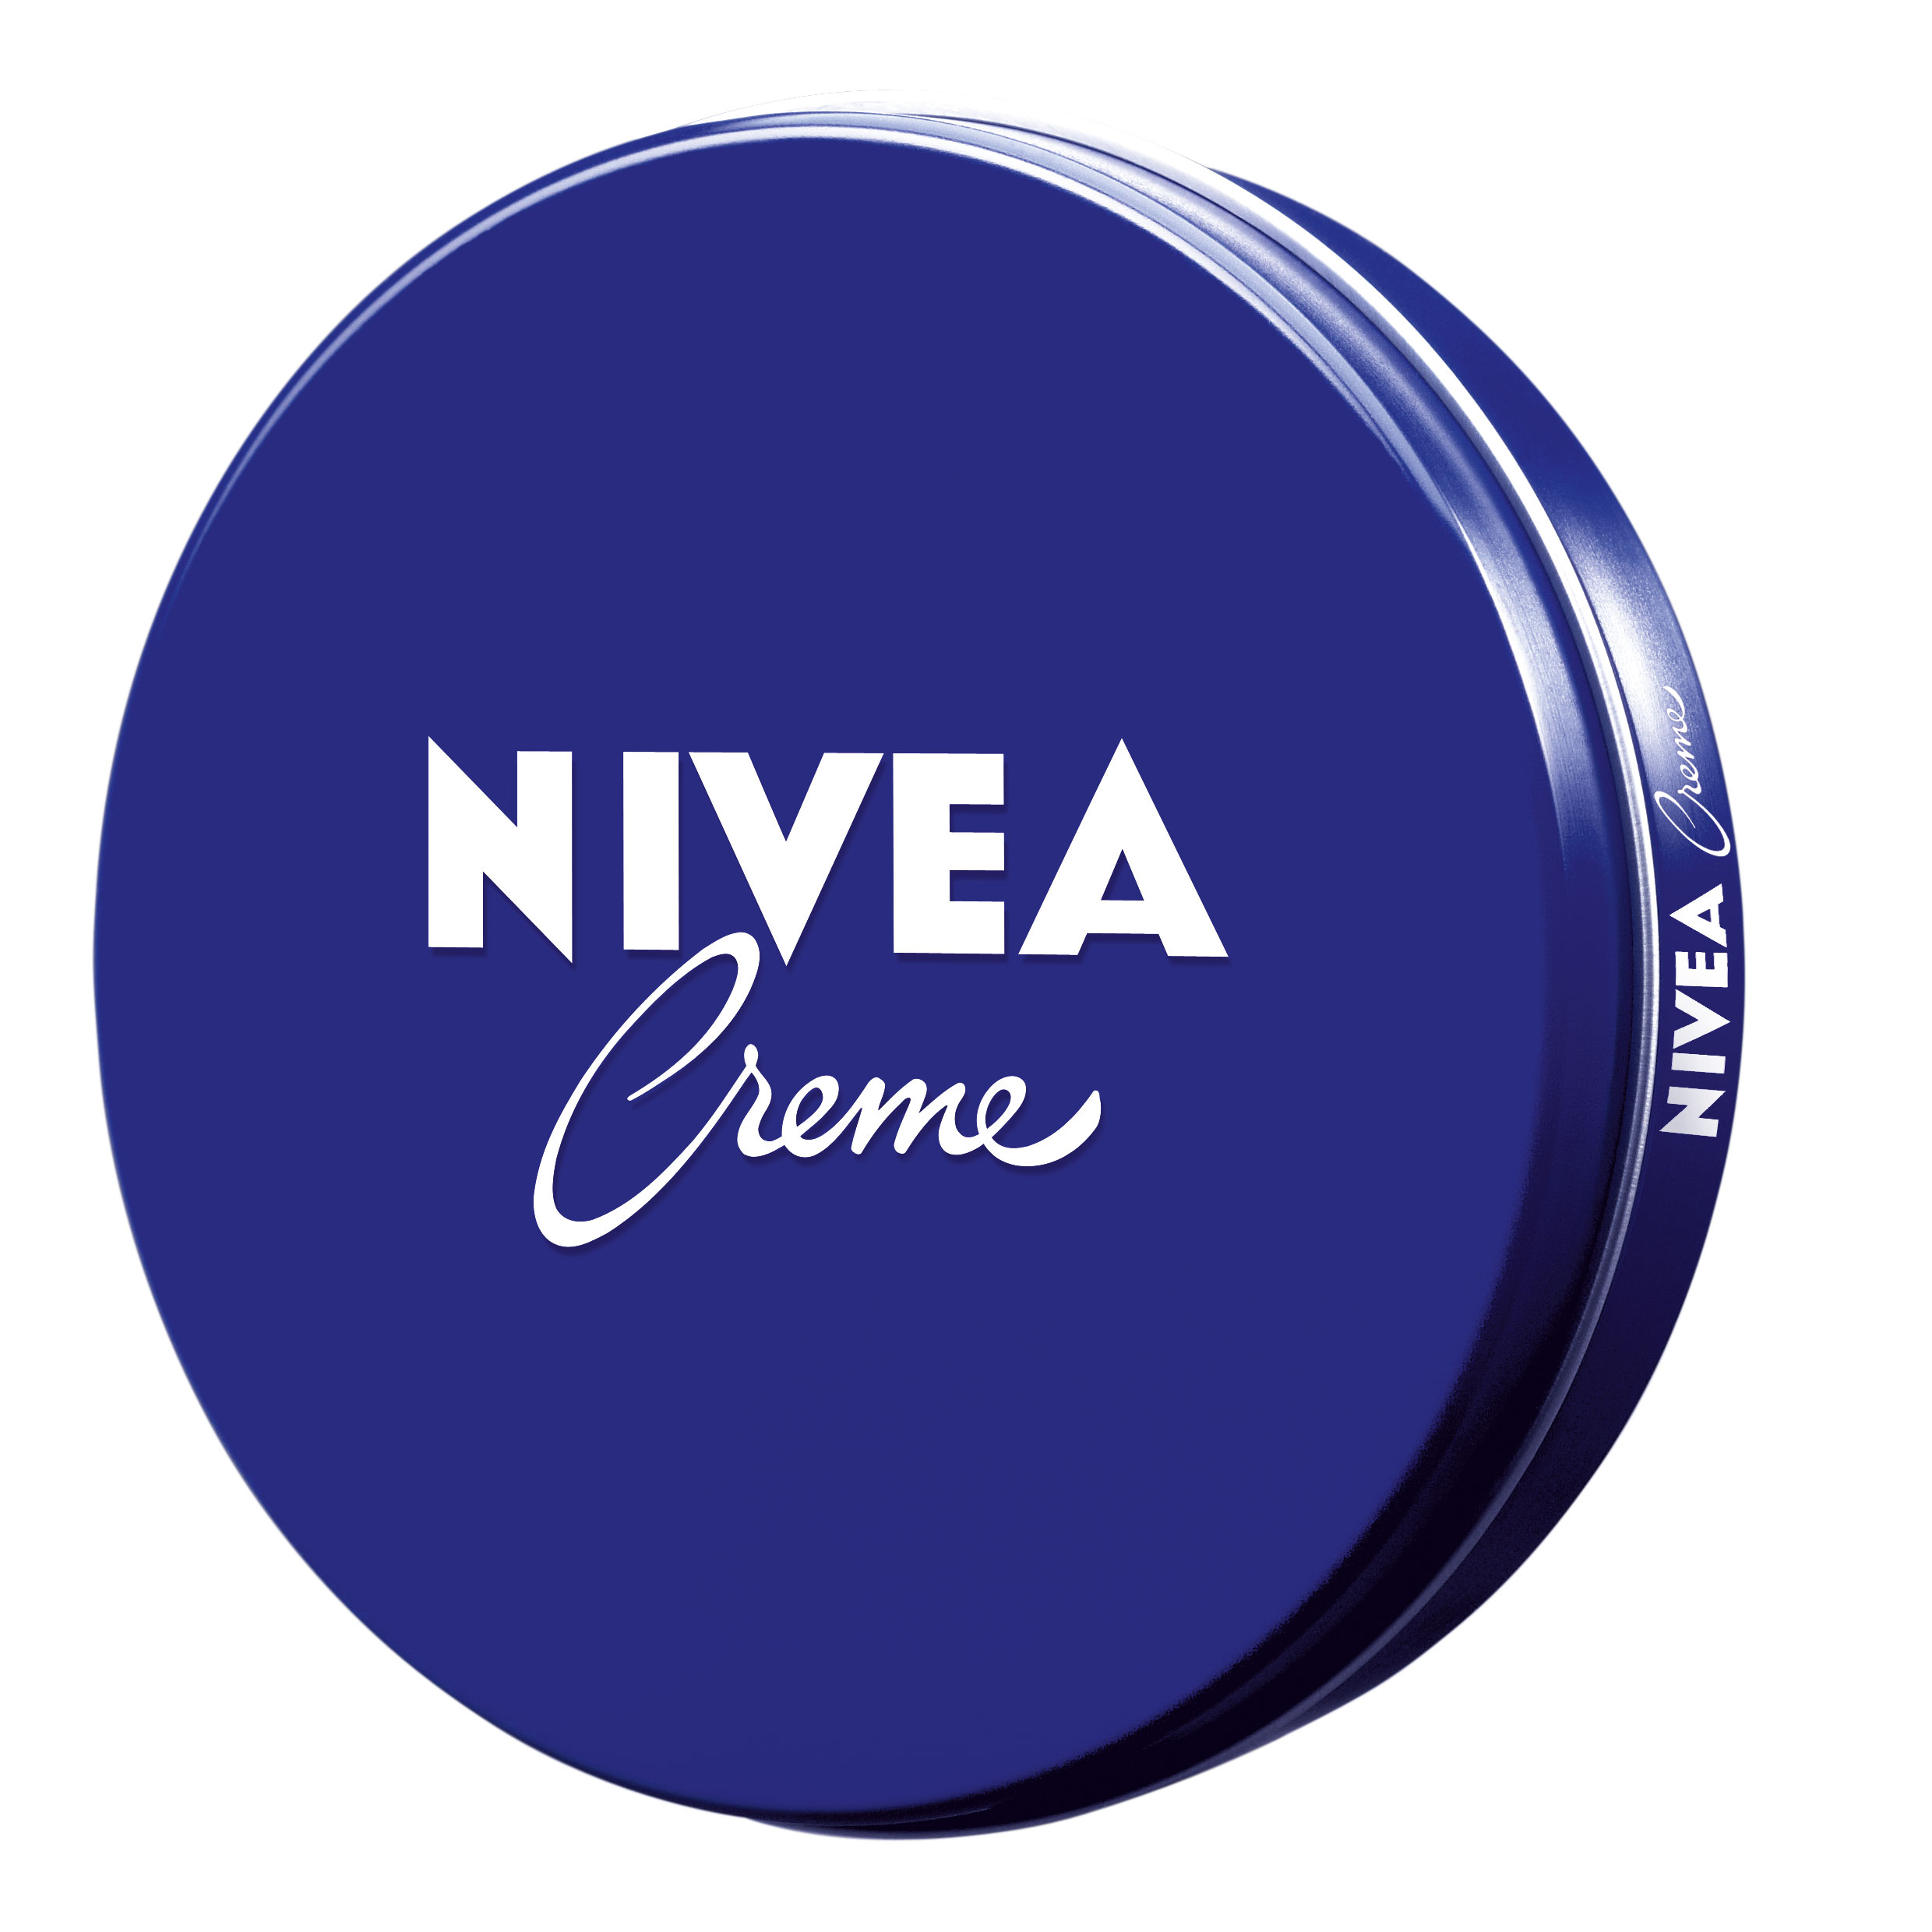 Крем для ухода за кожей Nivea 75мл (80103/120) nivea крем для ухода за кожей nivea creme 75 мл